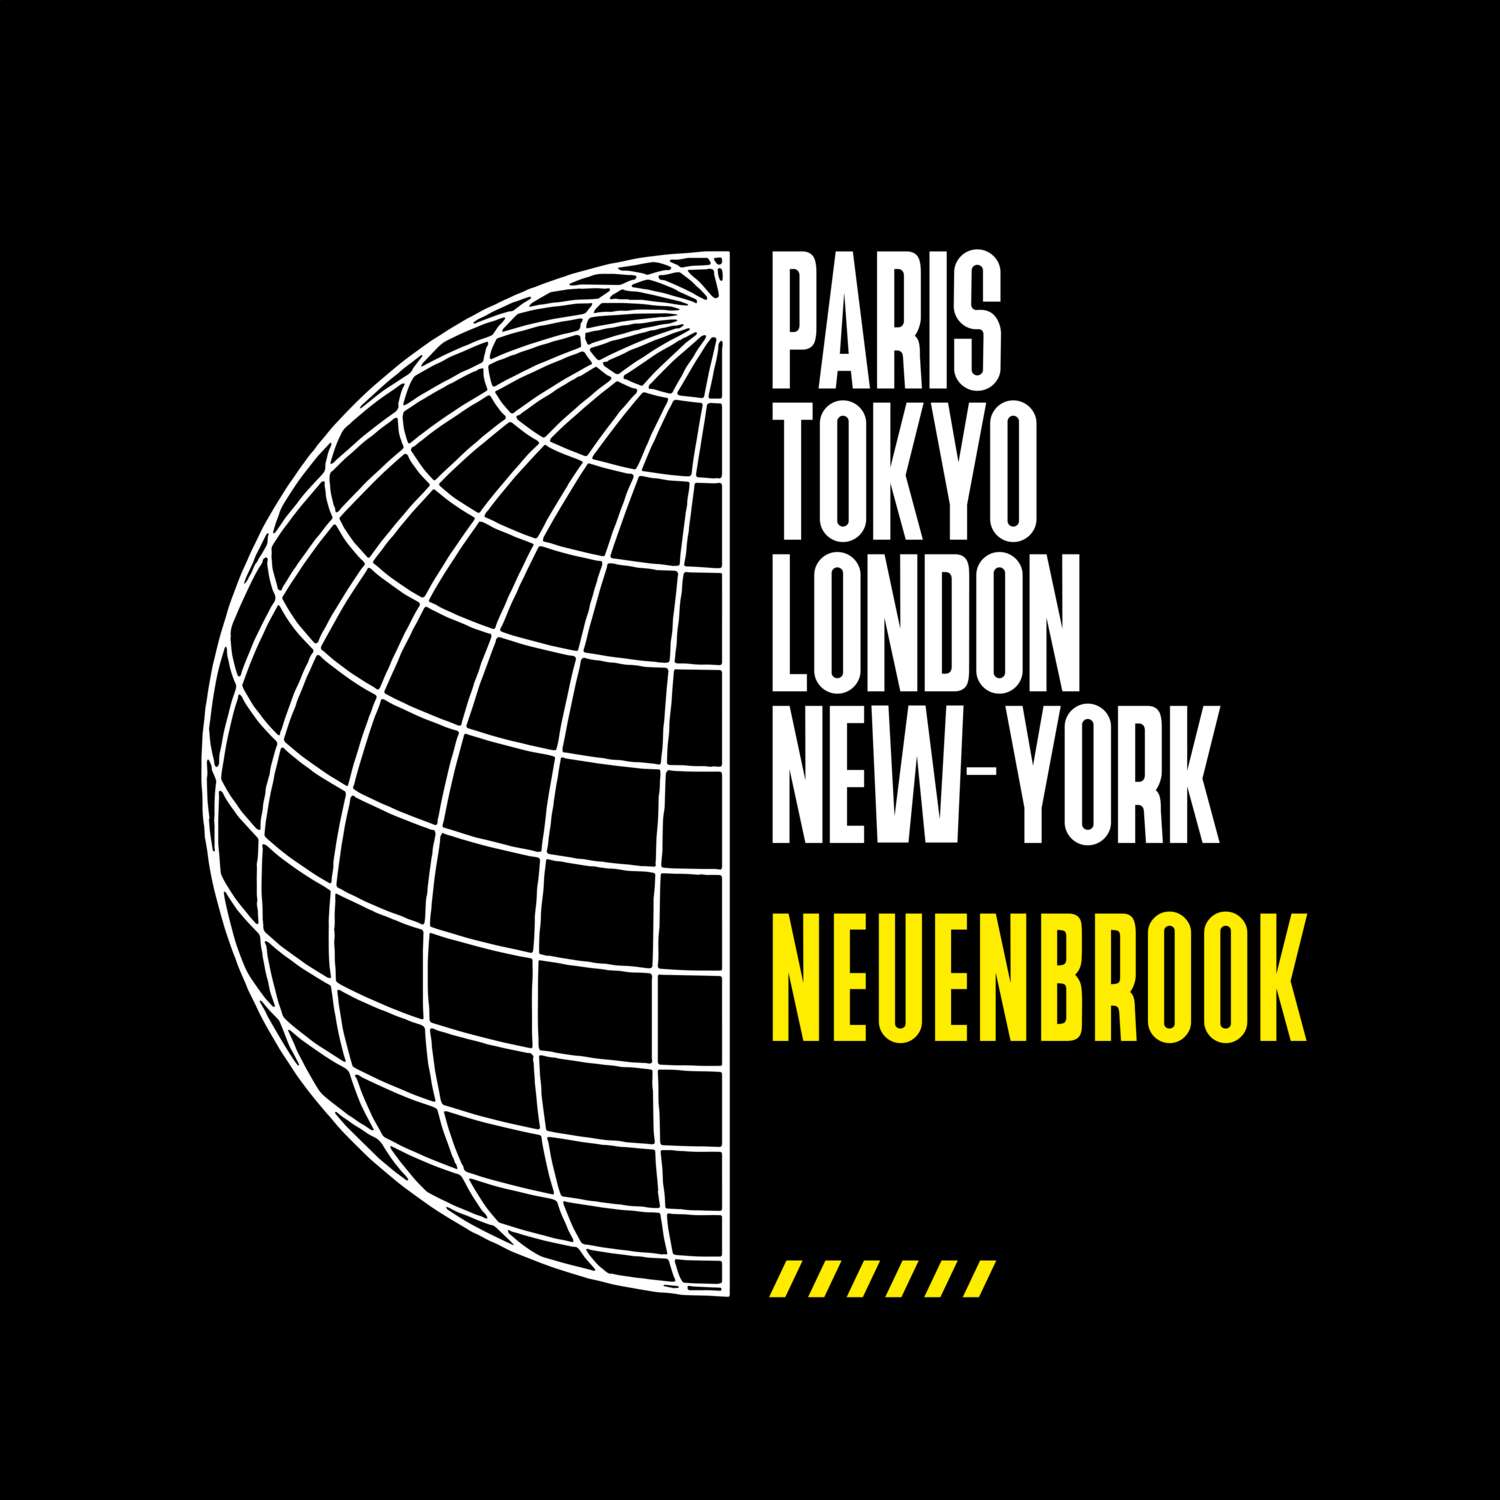 Neuenbrook T-Shirt »Paris Tokyo London«